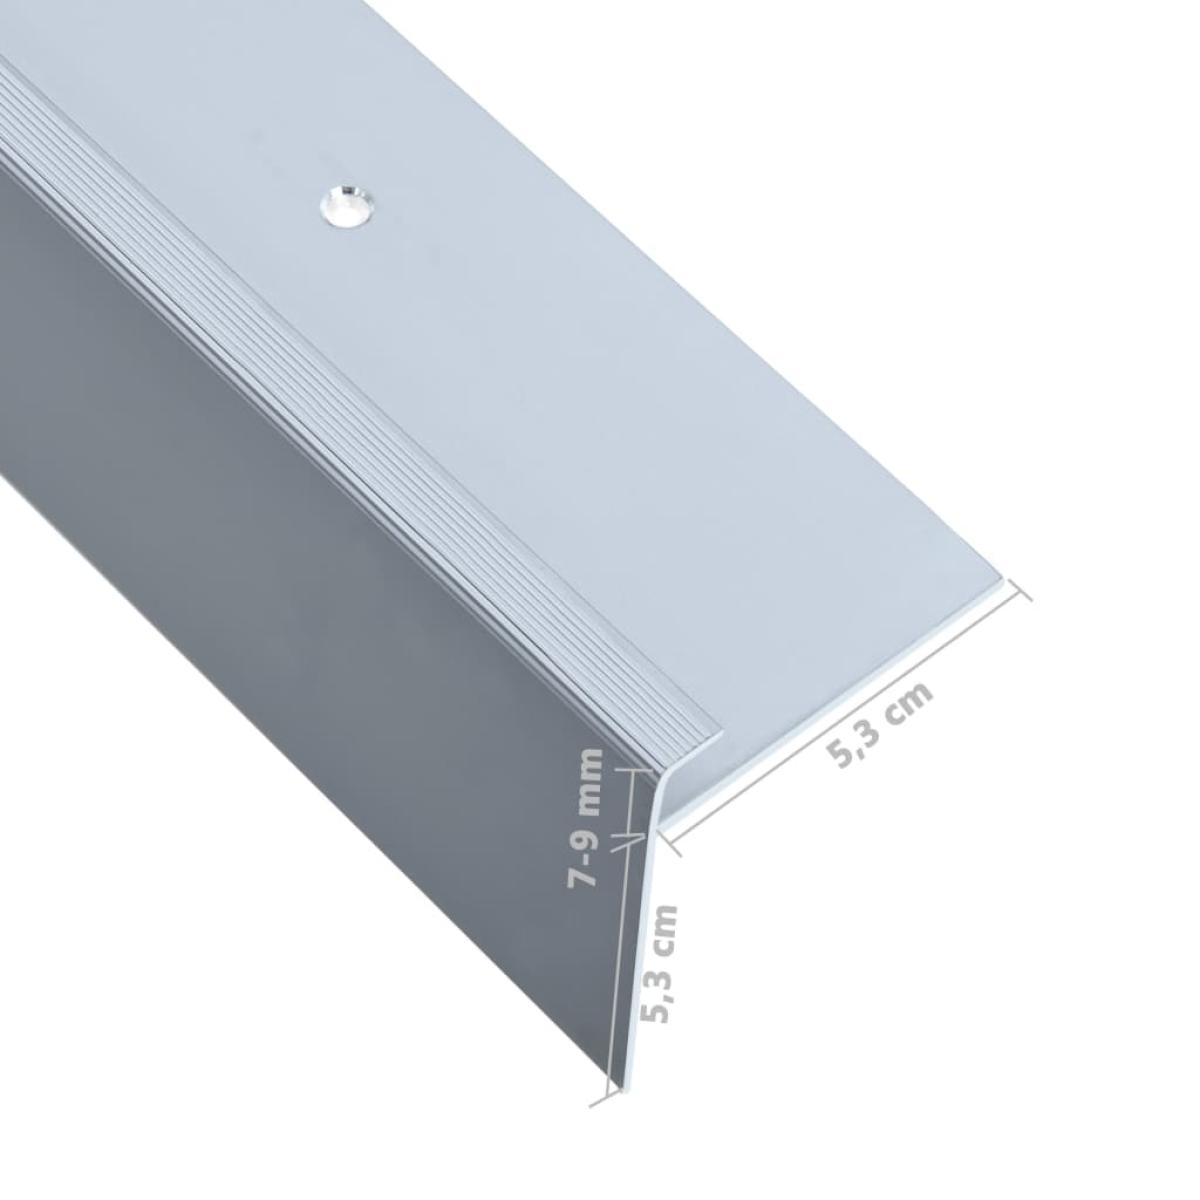 Cantoneras escalera forma de F 15 uds aluminio plateado 90 cm